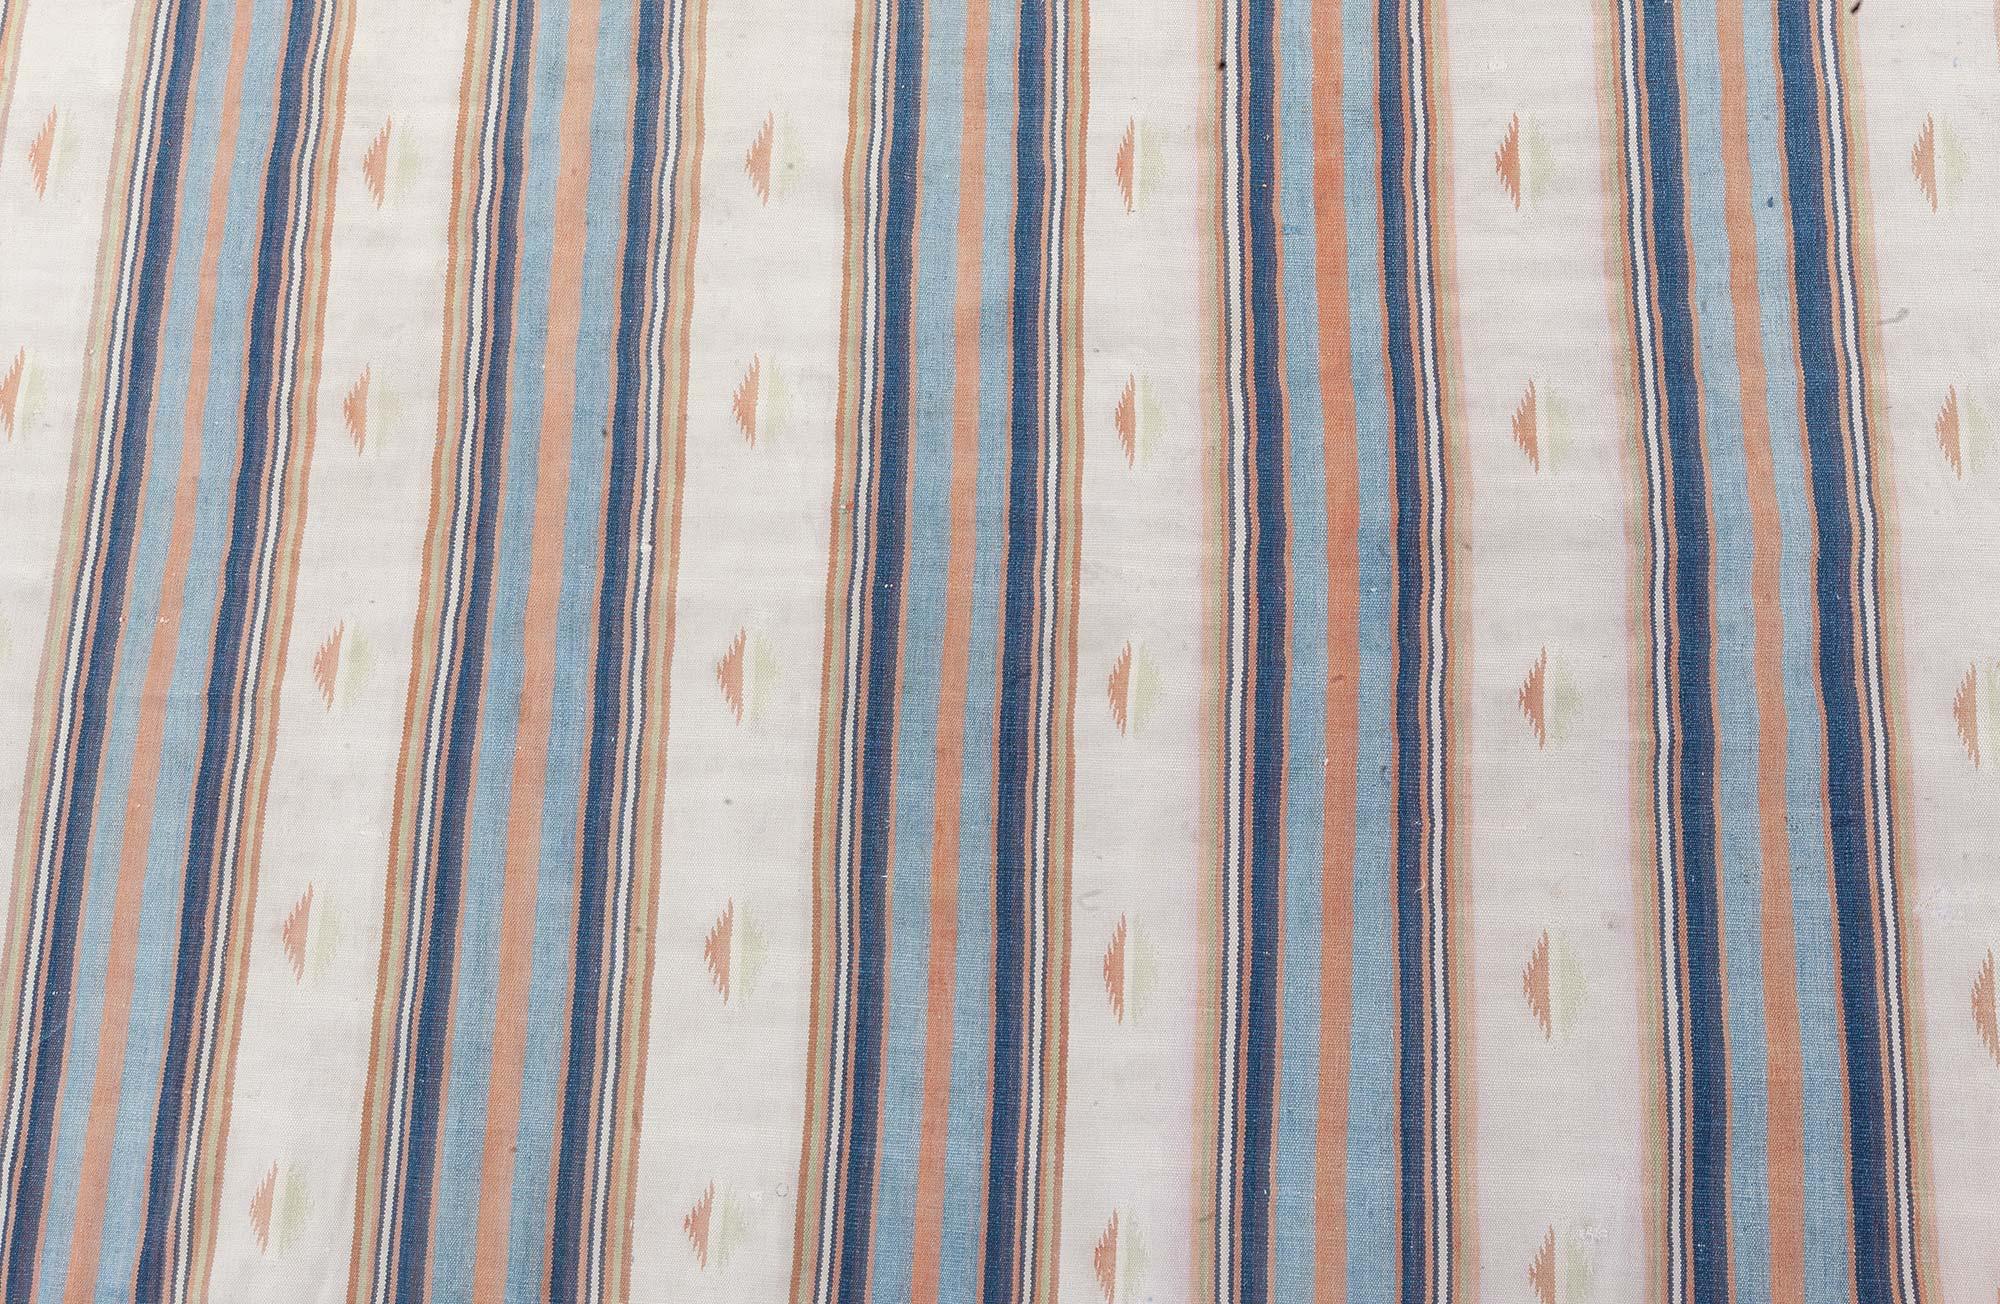 Vintage Indian Dhurrie gestreifter Teppich
Größe: 13'5